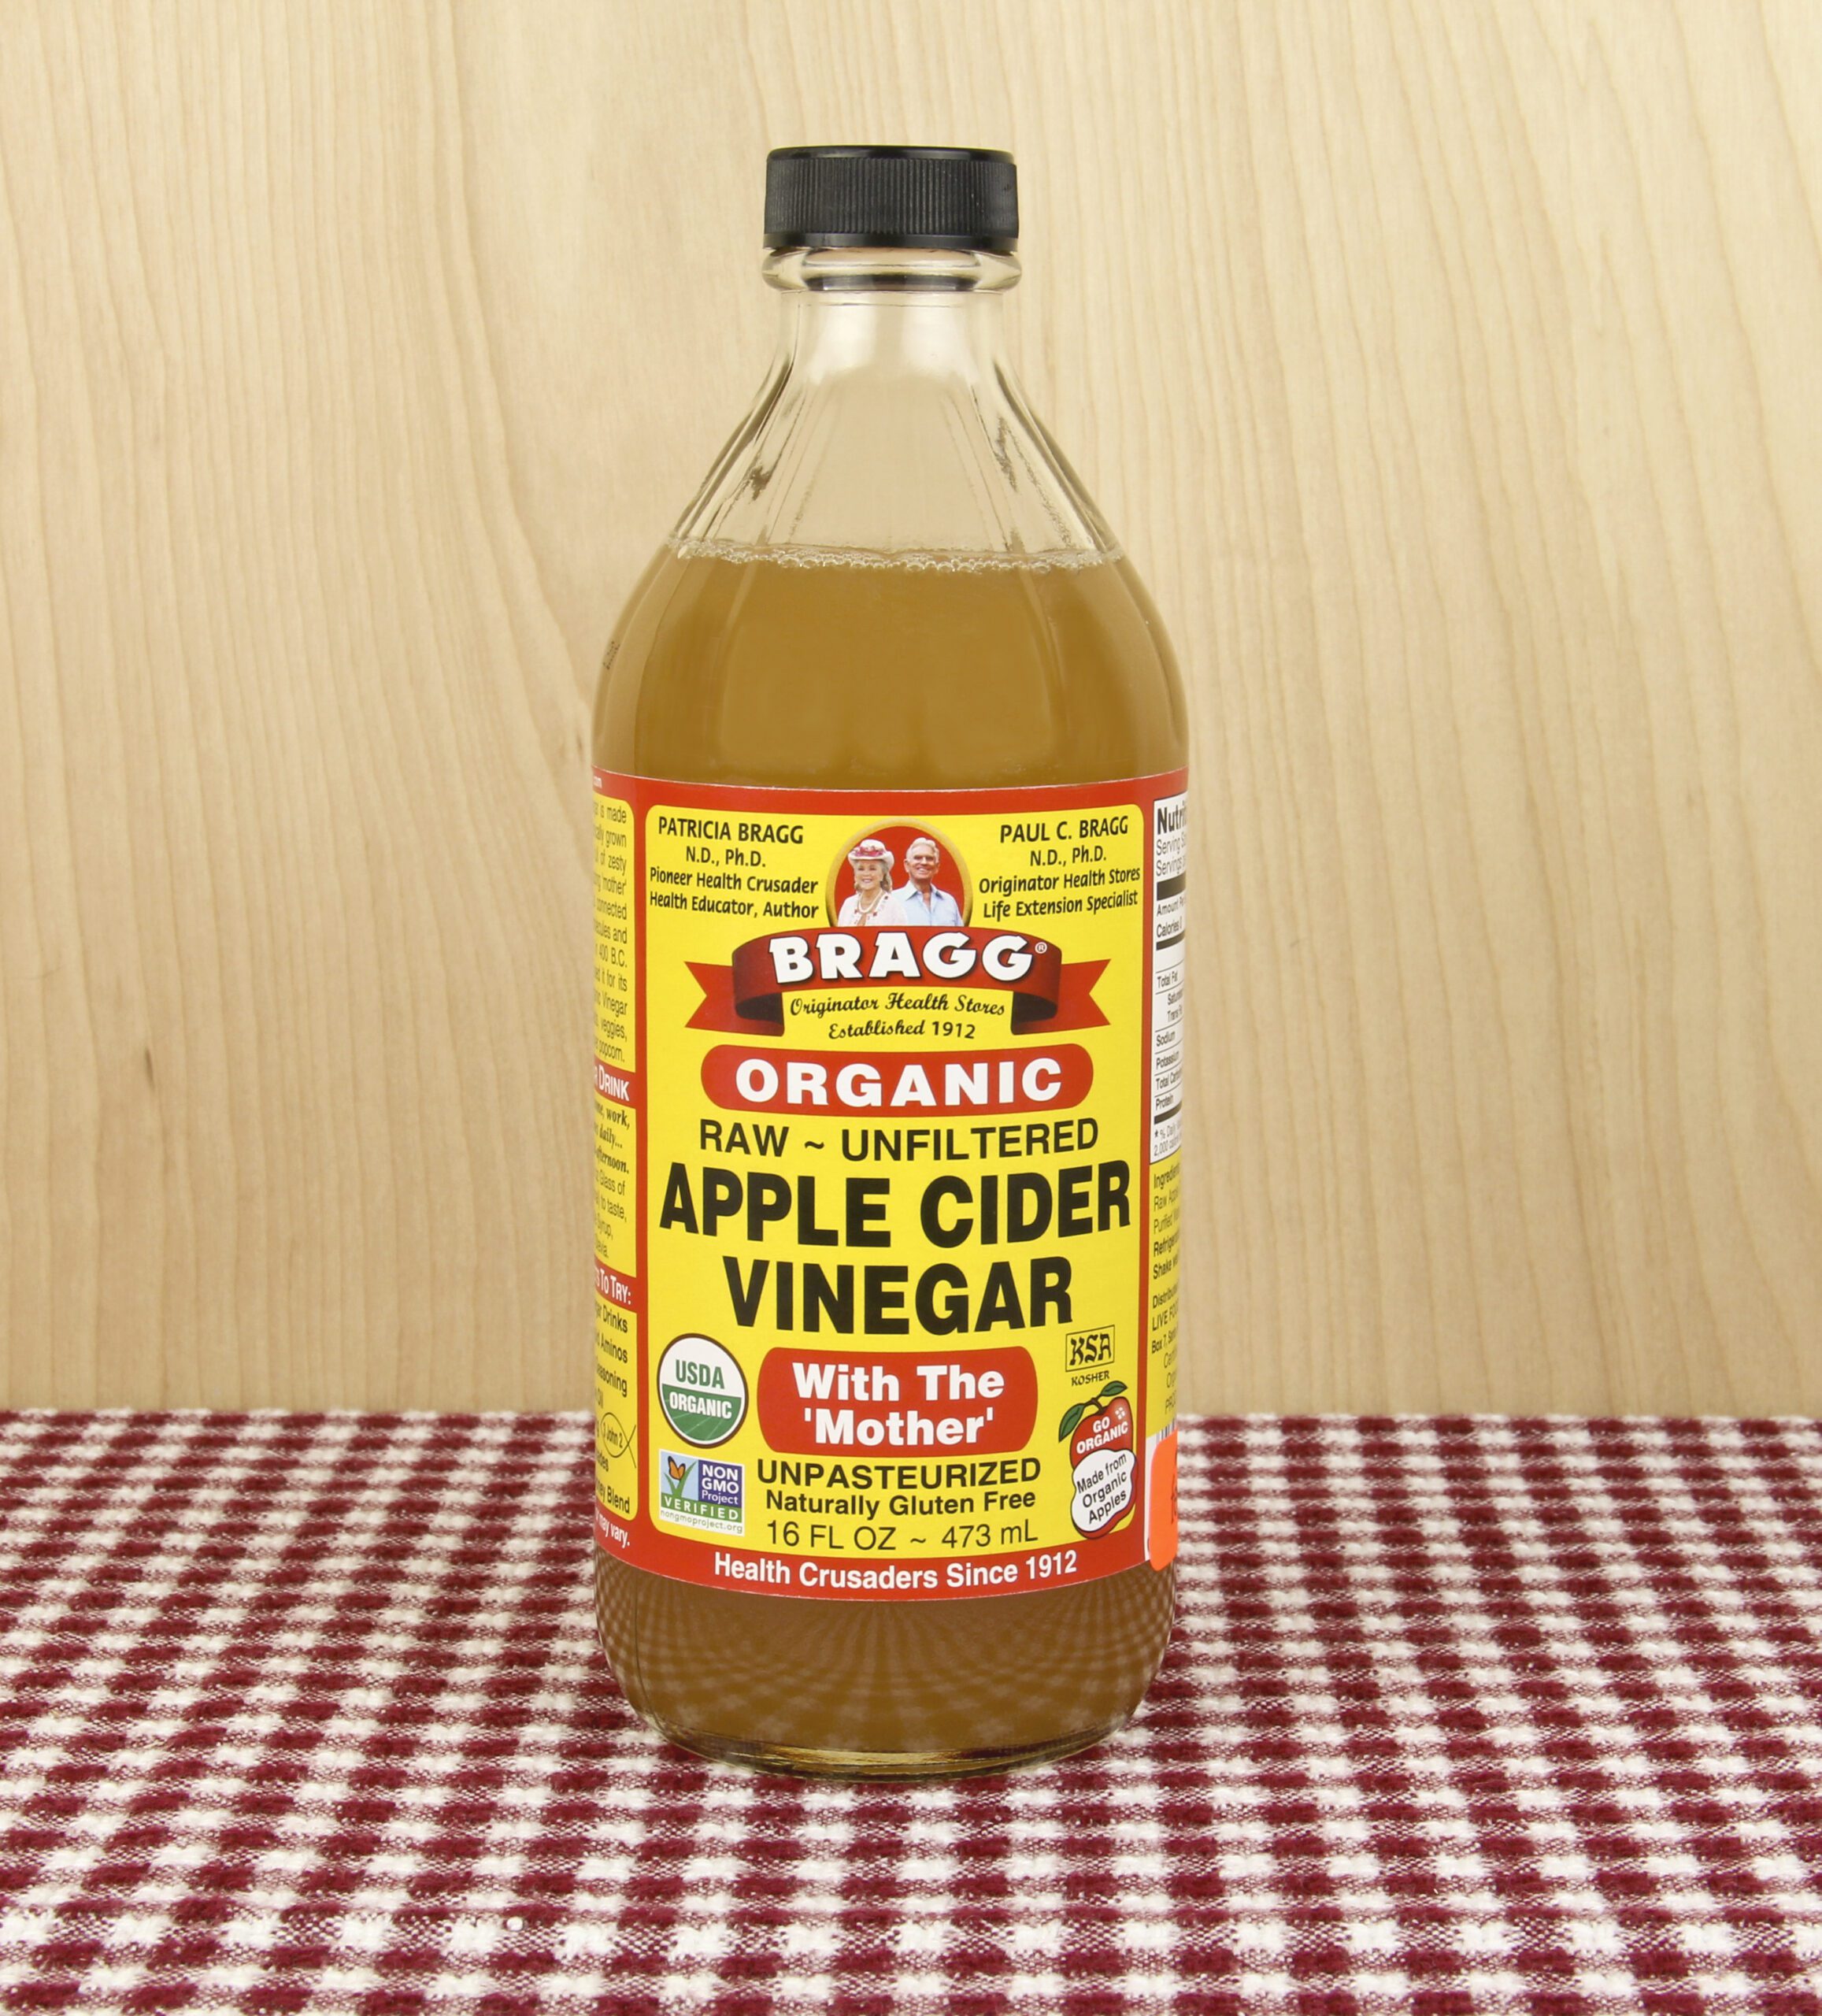 Bottle of Bragg Apple Cider Vinegar